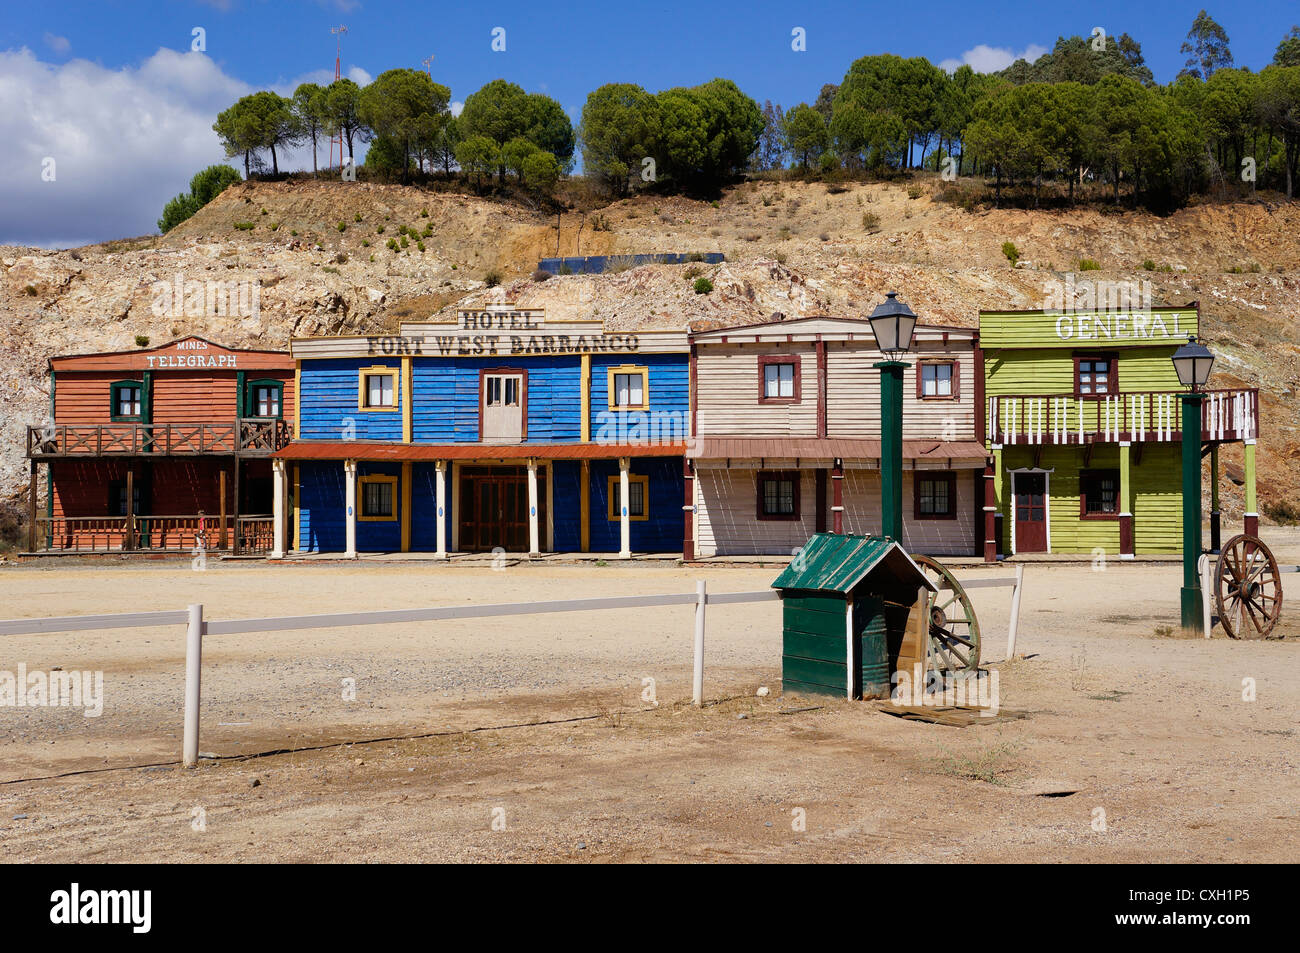 Una vista frontale di un vecchio hotel fort west Barranco, Siviglia, Spagna Foto Stock